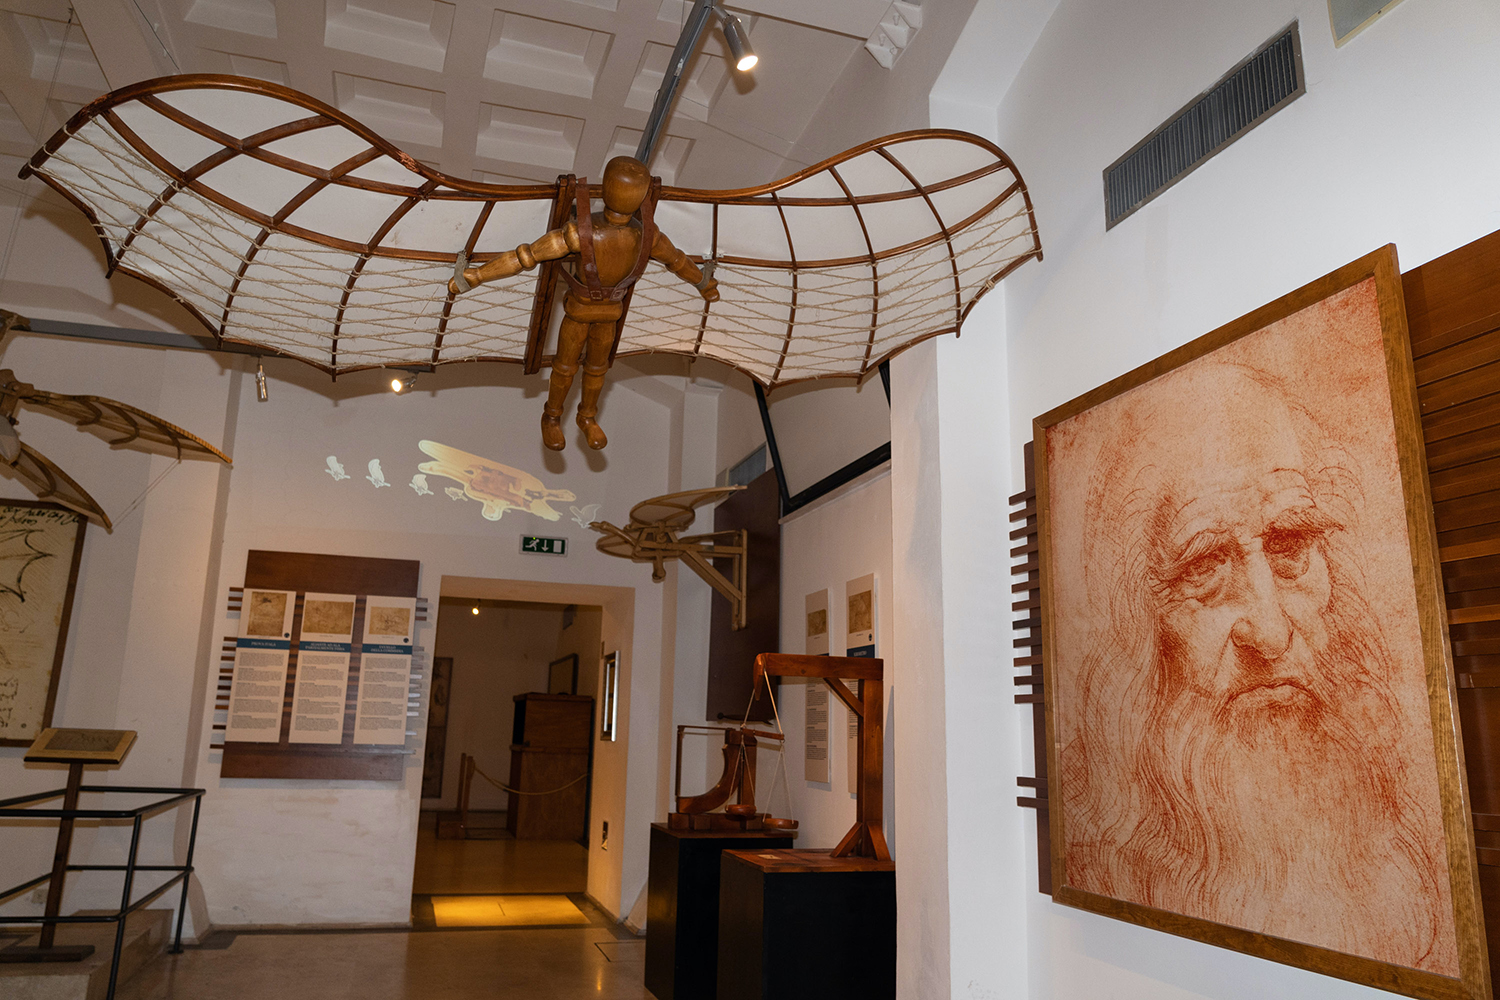 Un protoype du mécanisme de vol imaginé par Da Vinci